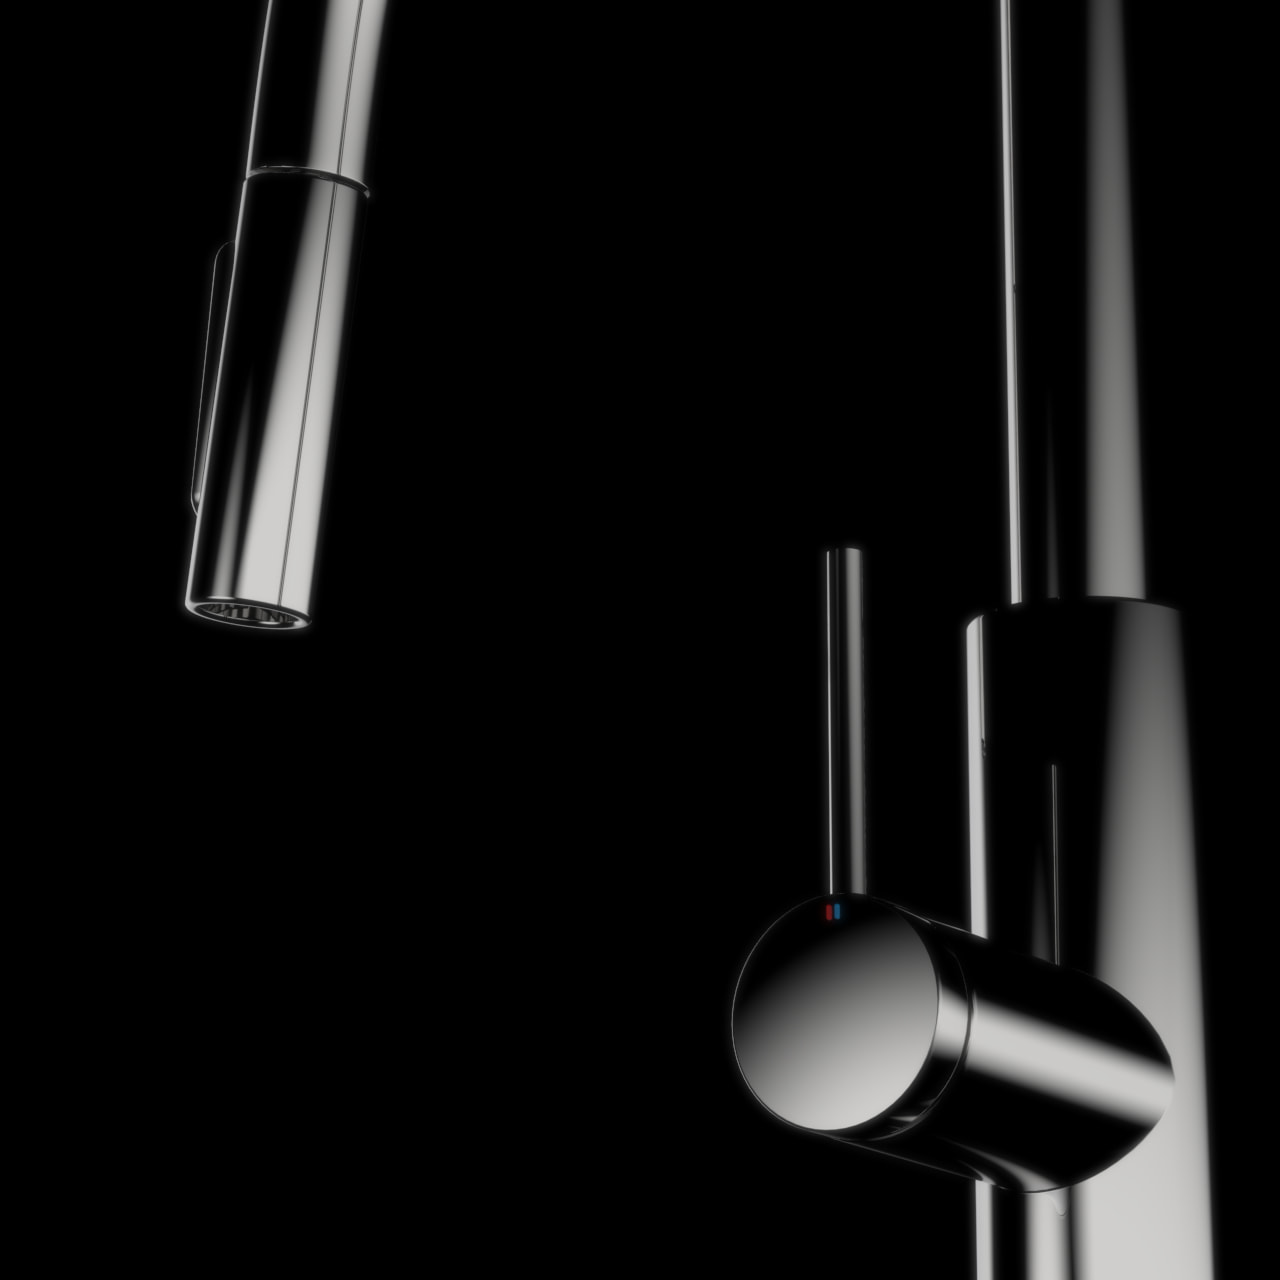 Faucet 3d model rendered in Keyshot 3d